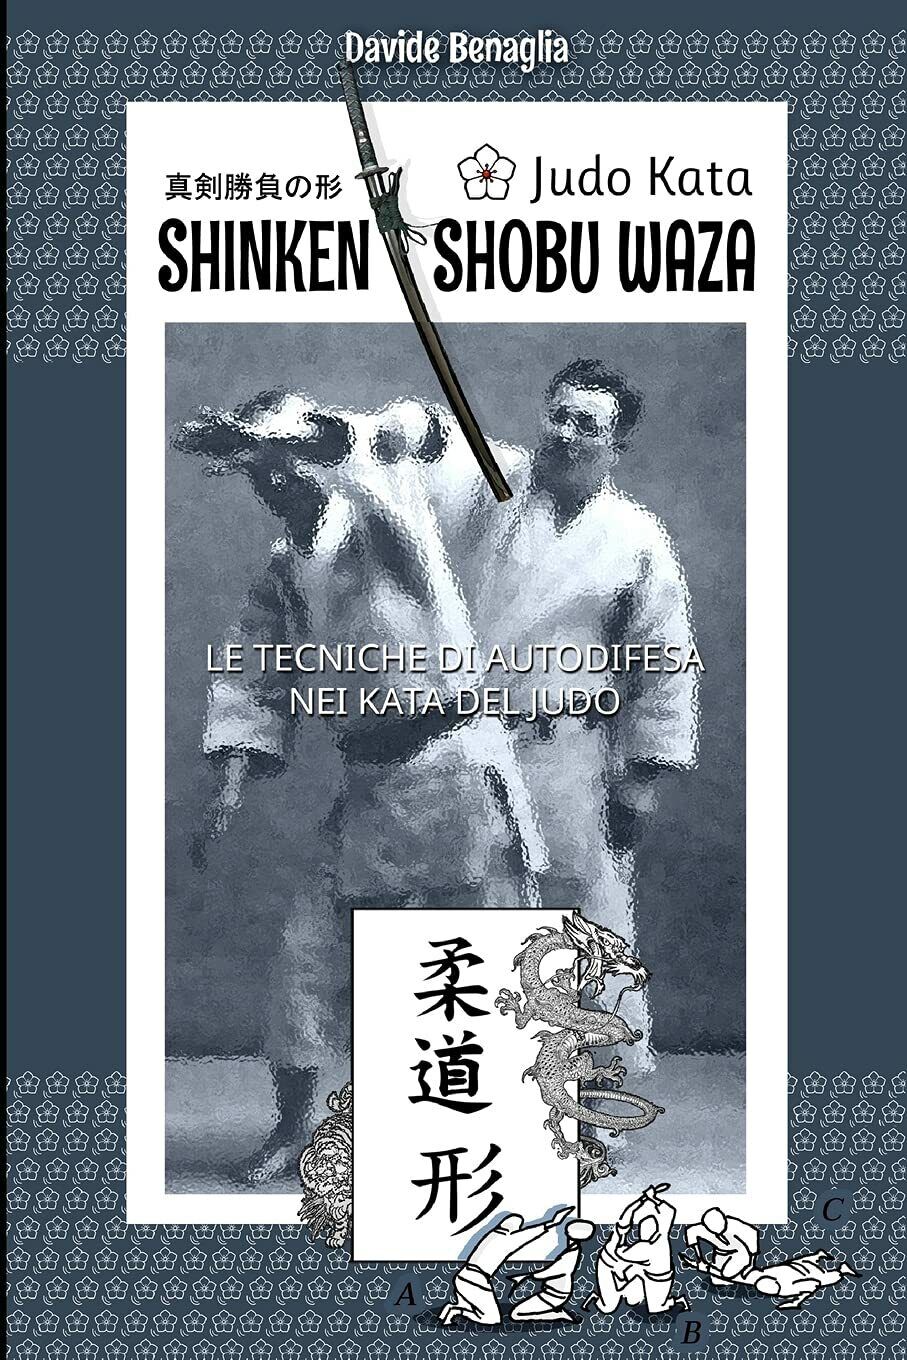 JUDO KATA: SHINKEN SHOBU WAZA - davide benaglia - 2021